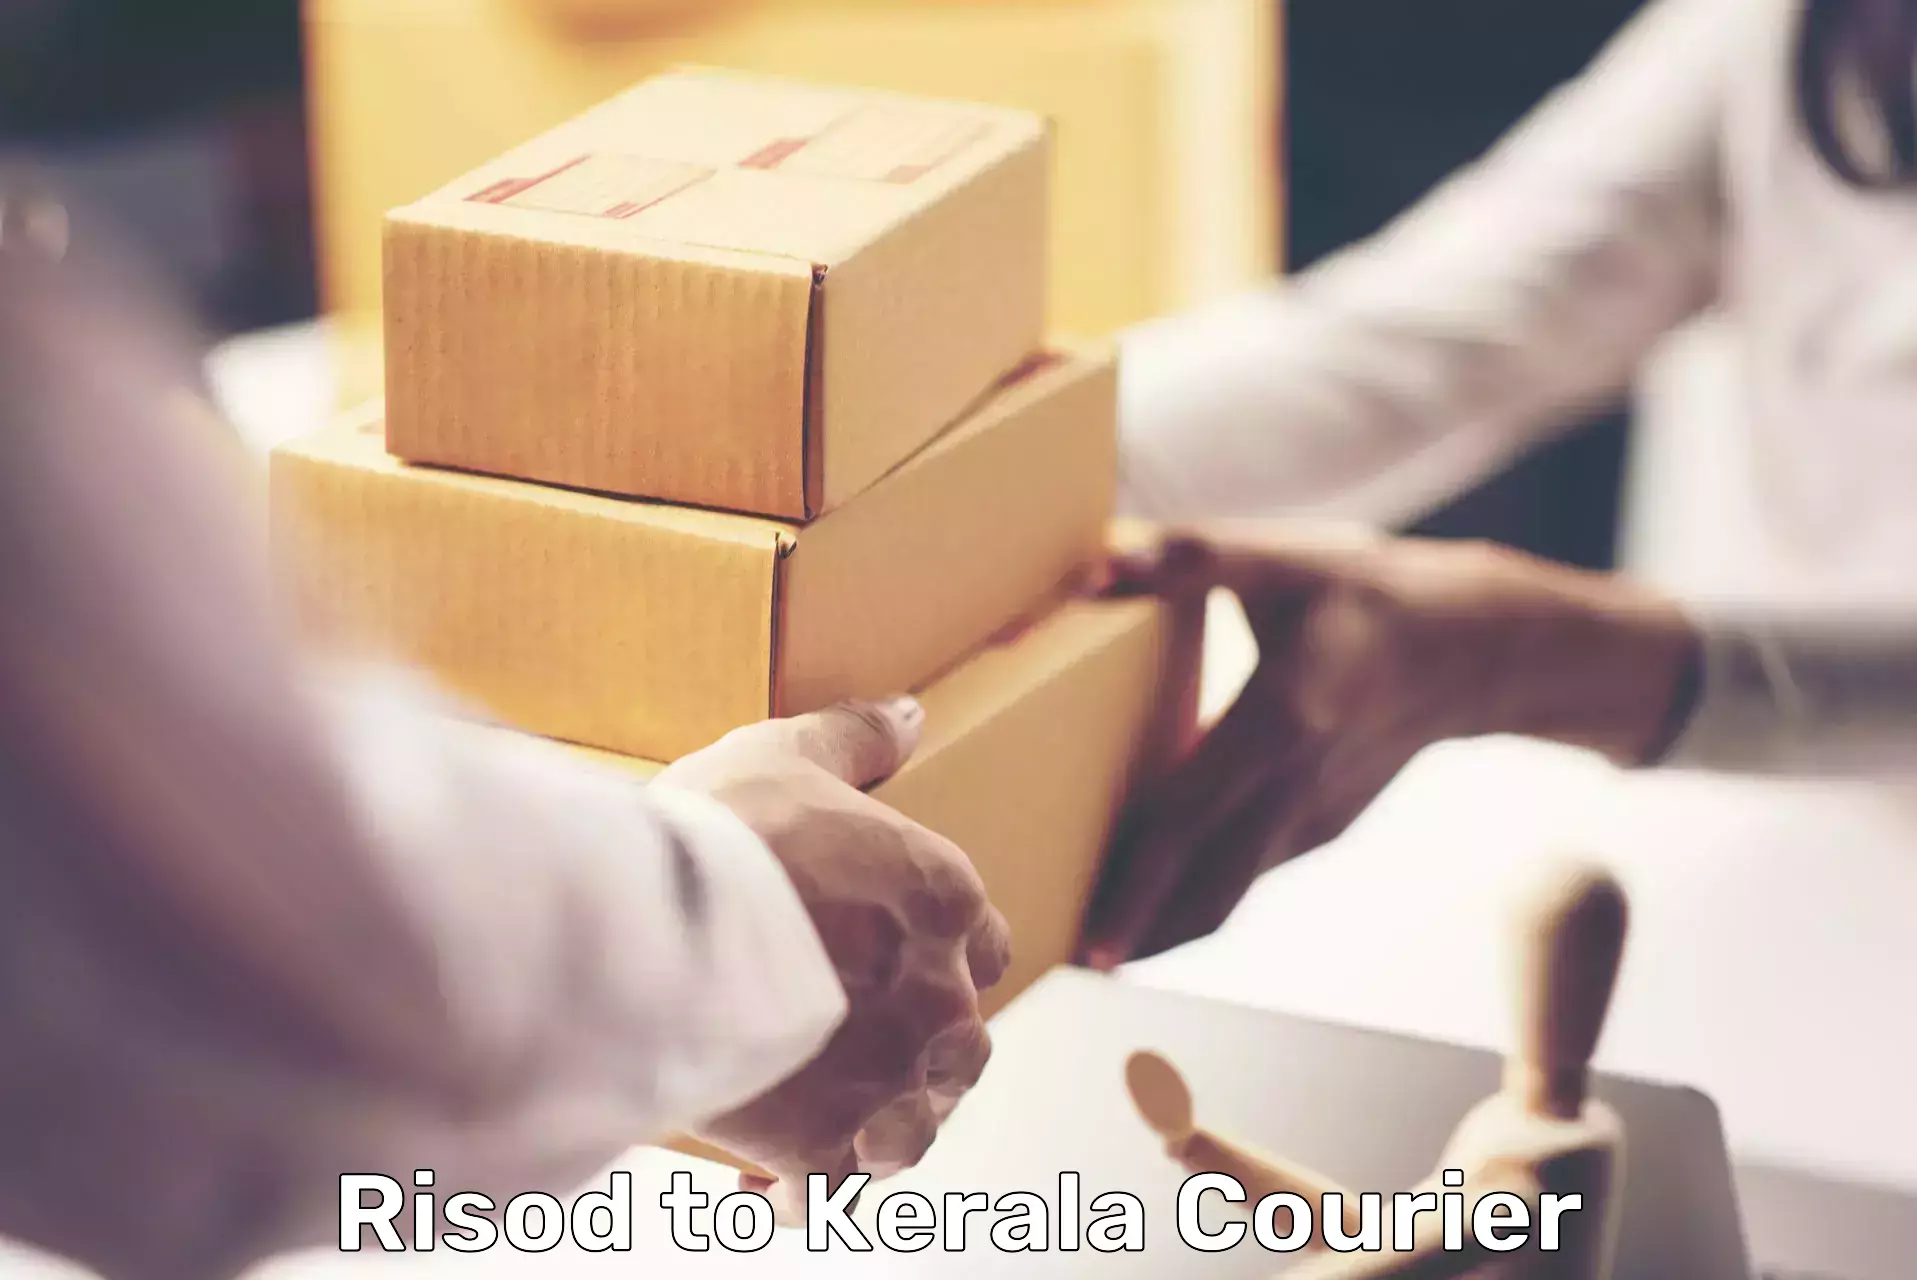 Efficient parcel transport Risod to Adur Kla